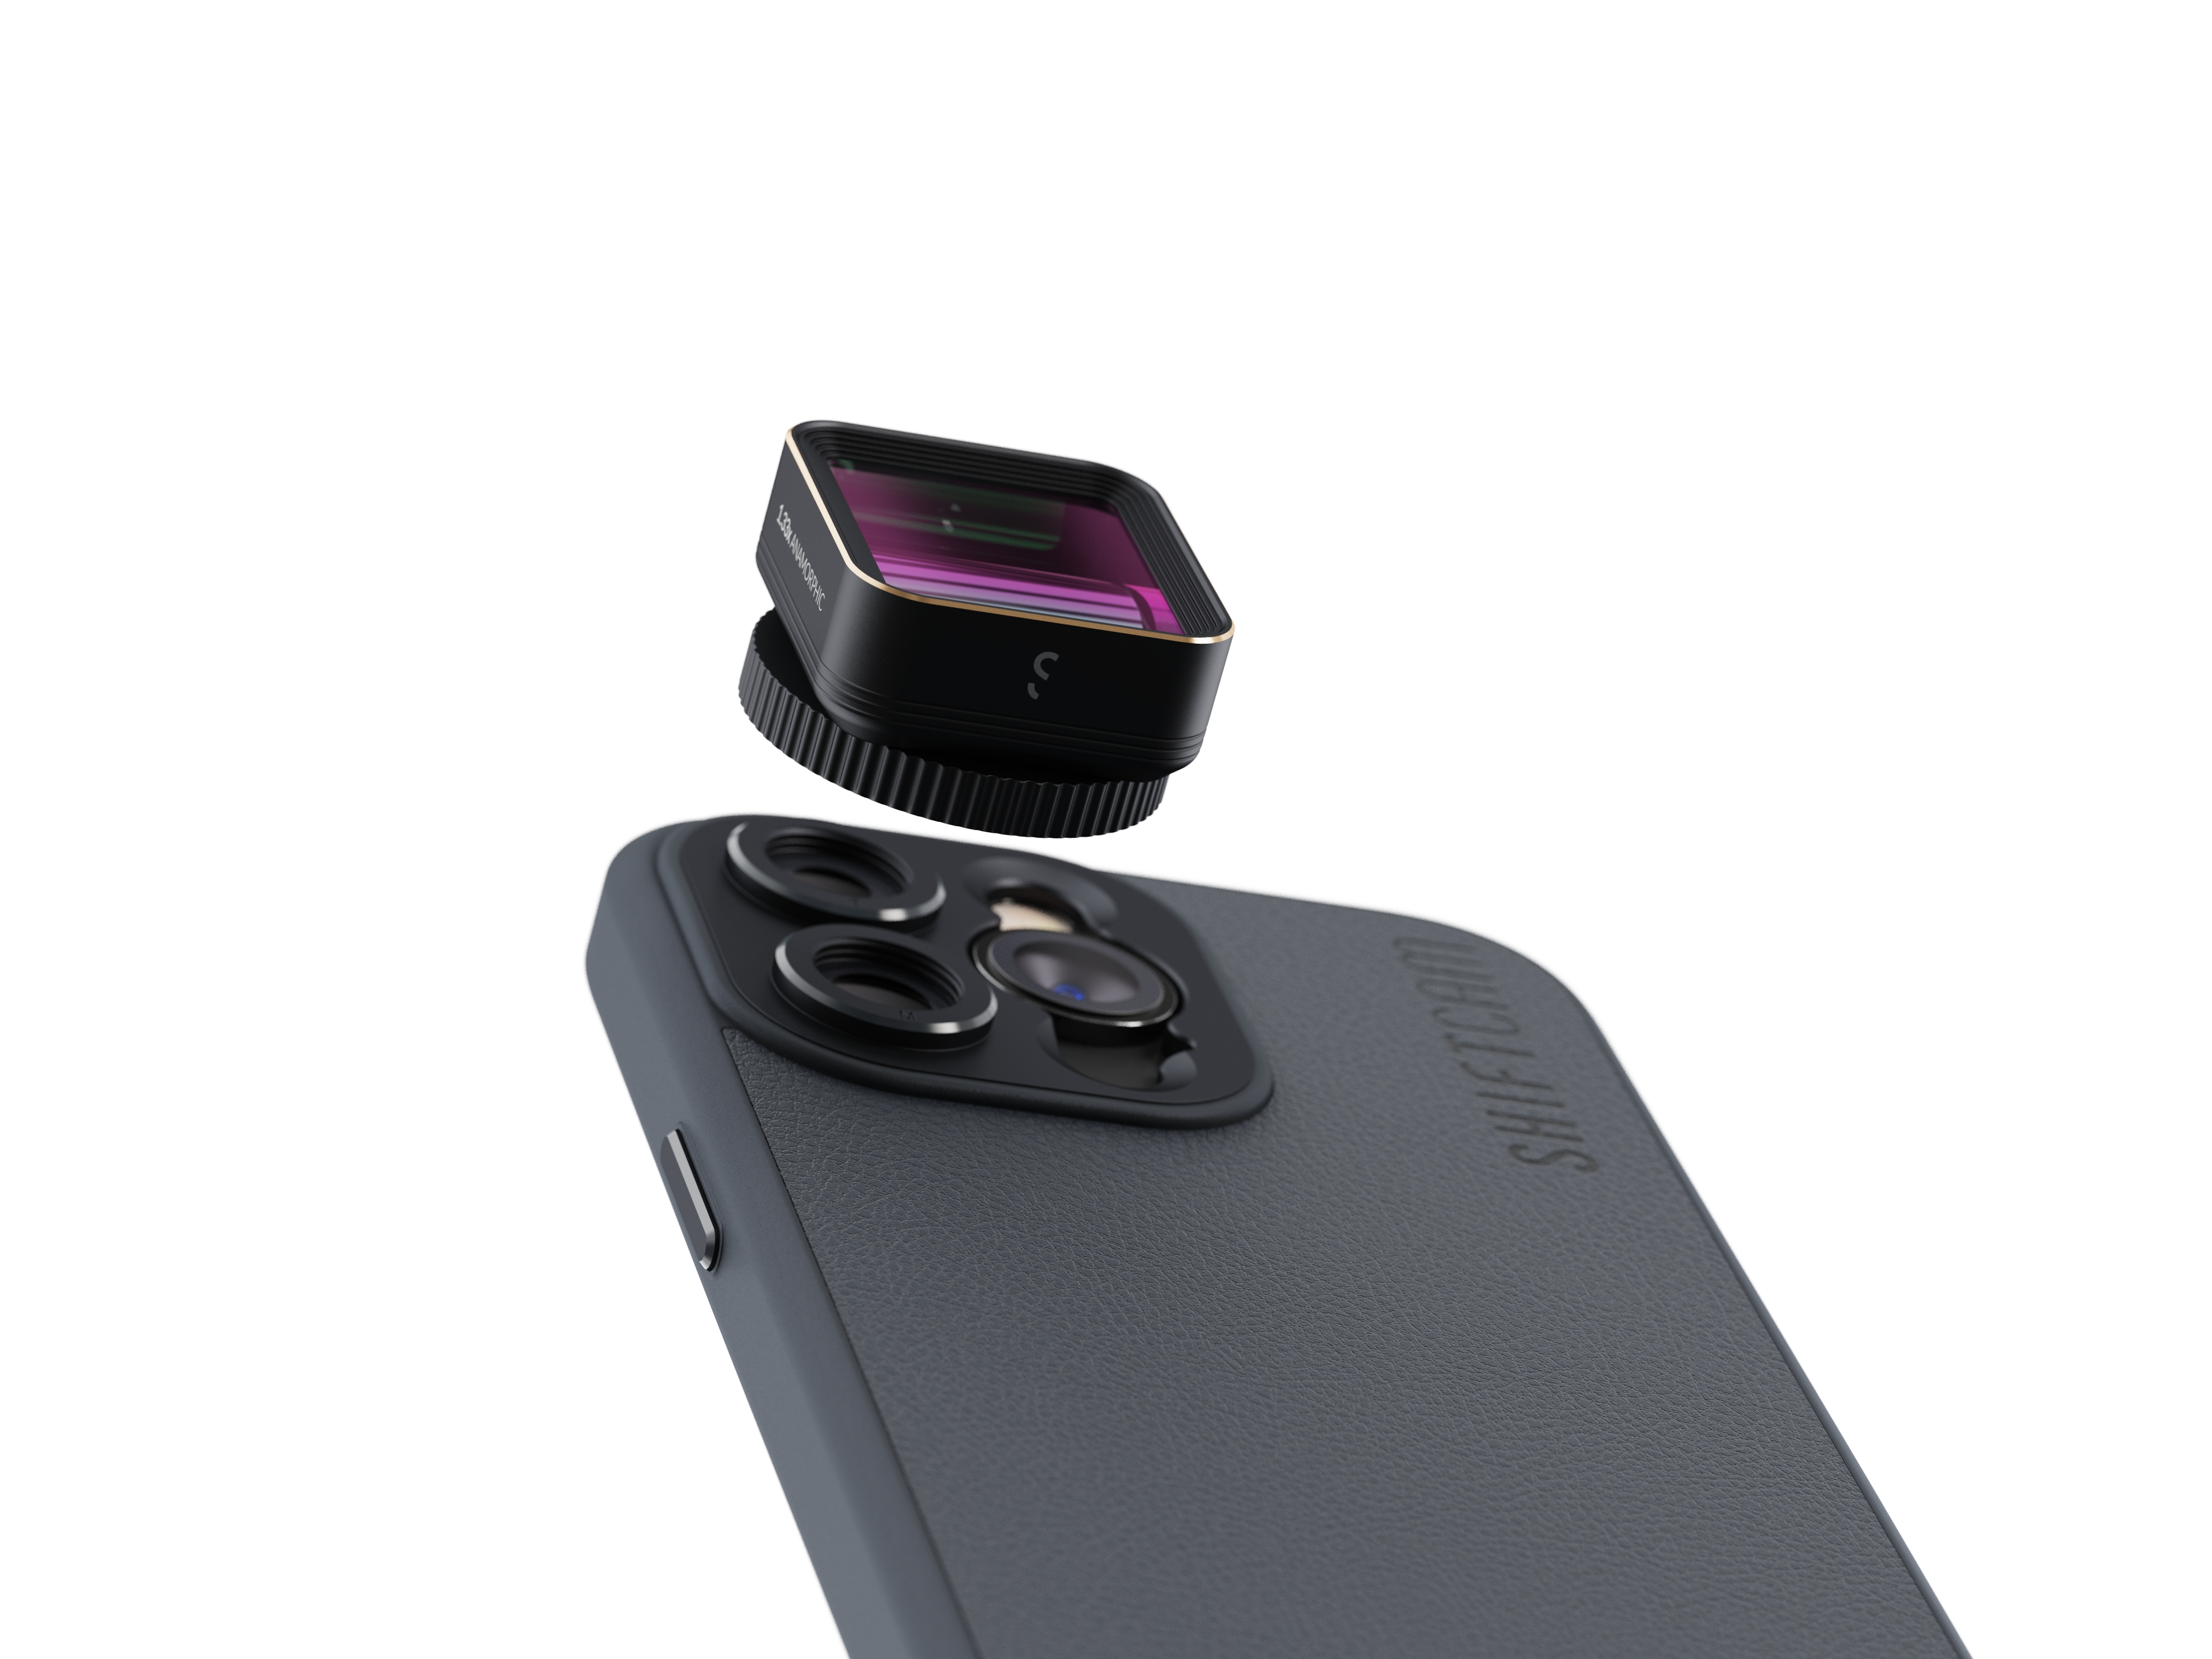 SHIFTCAM LensUltra 1.33x Anamorphic Anamorphotisches Objektiv Smartphone für T2-Mount - - (Smartphone Objektiv